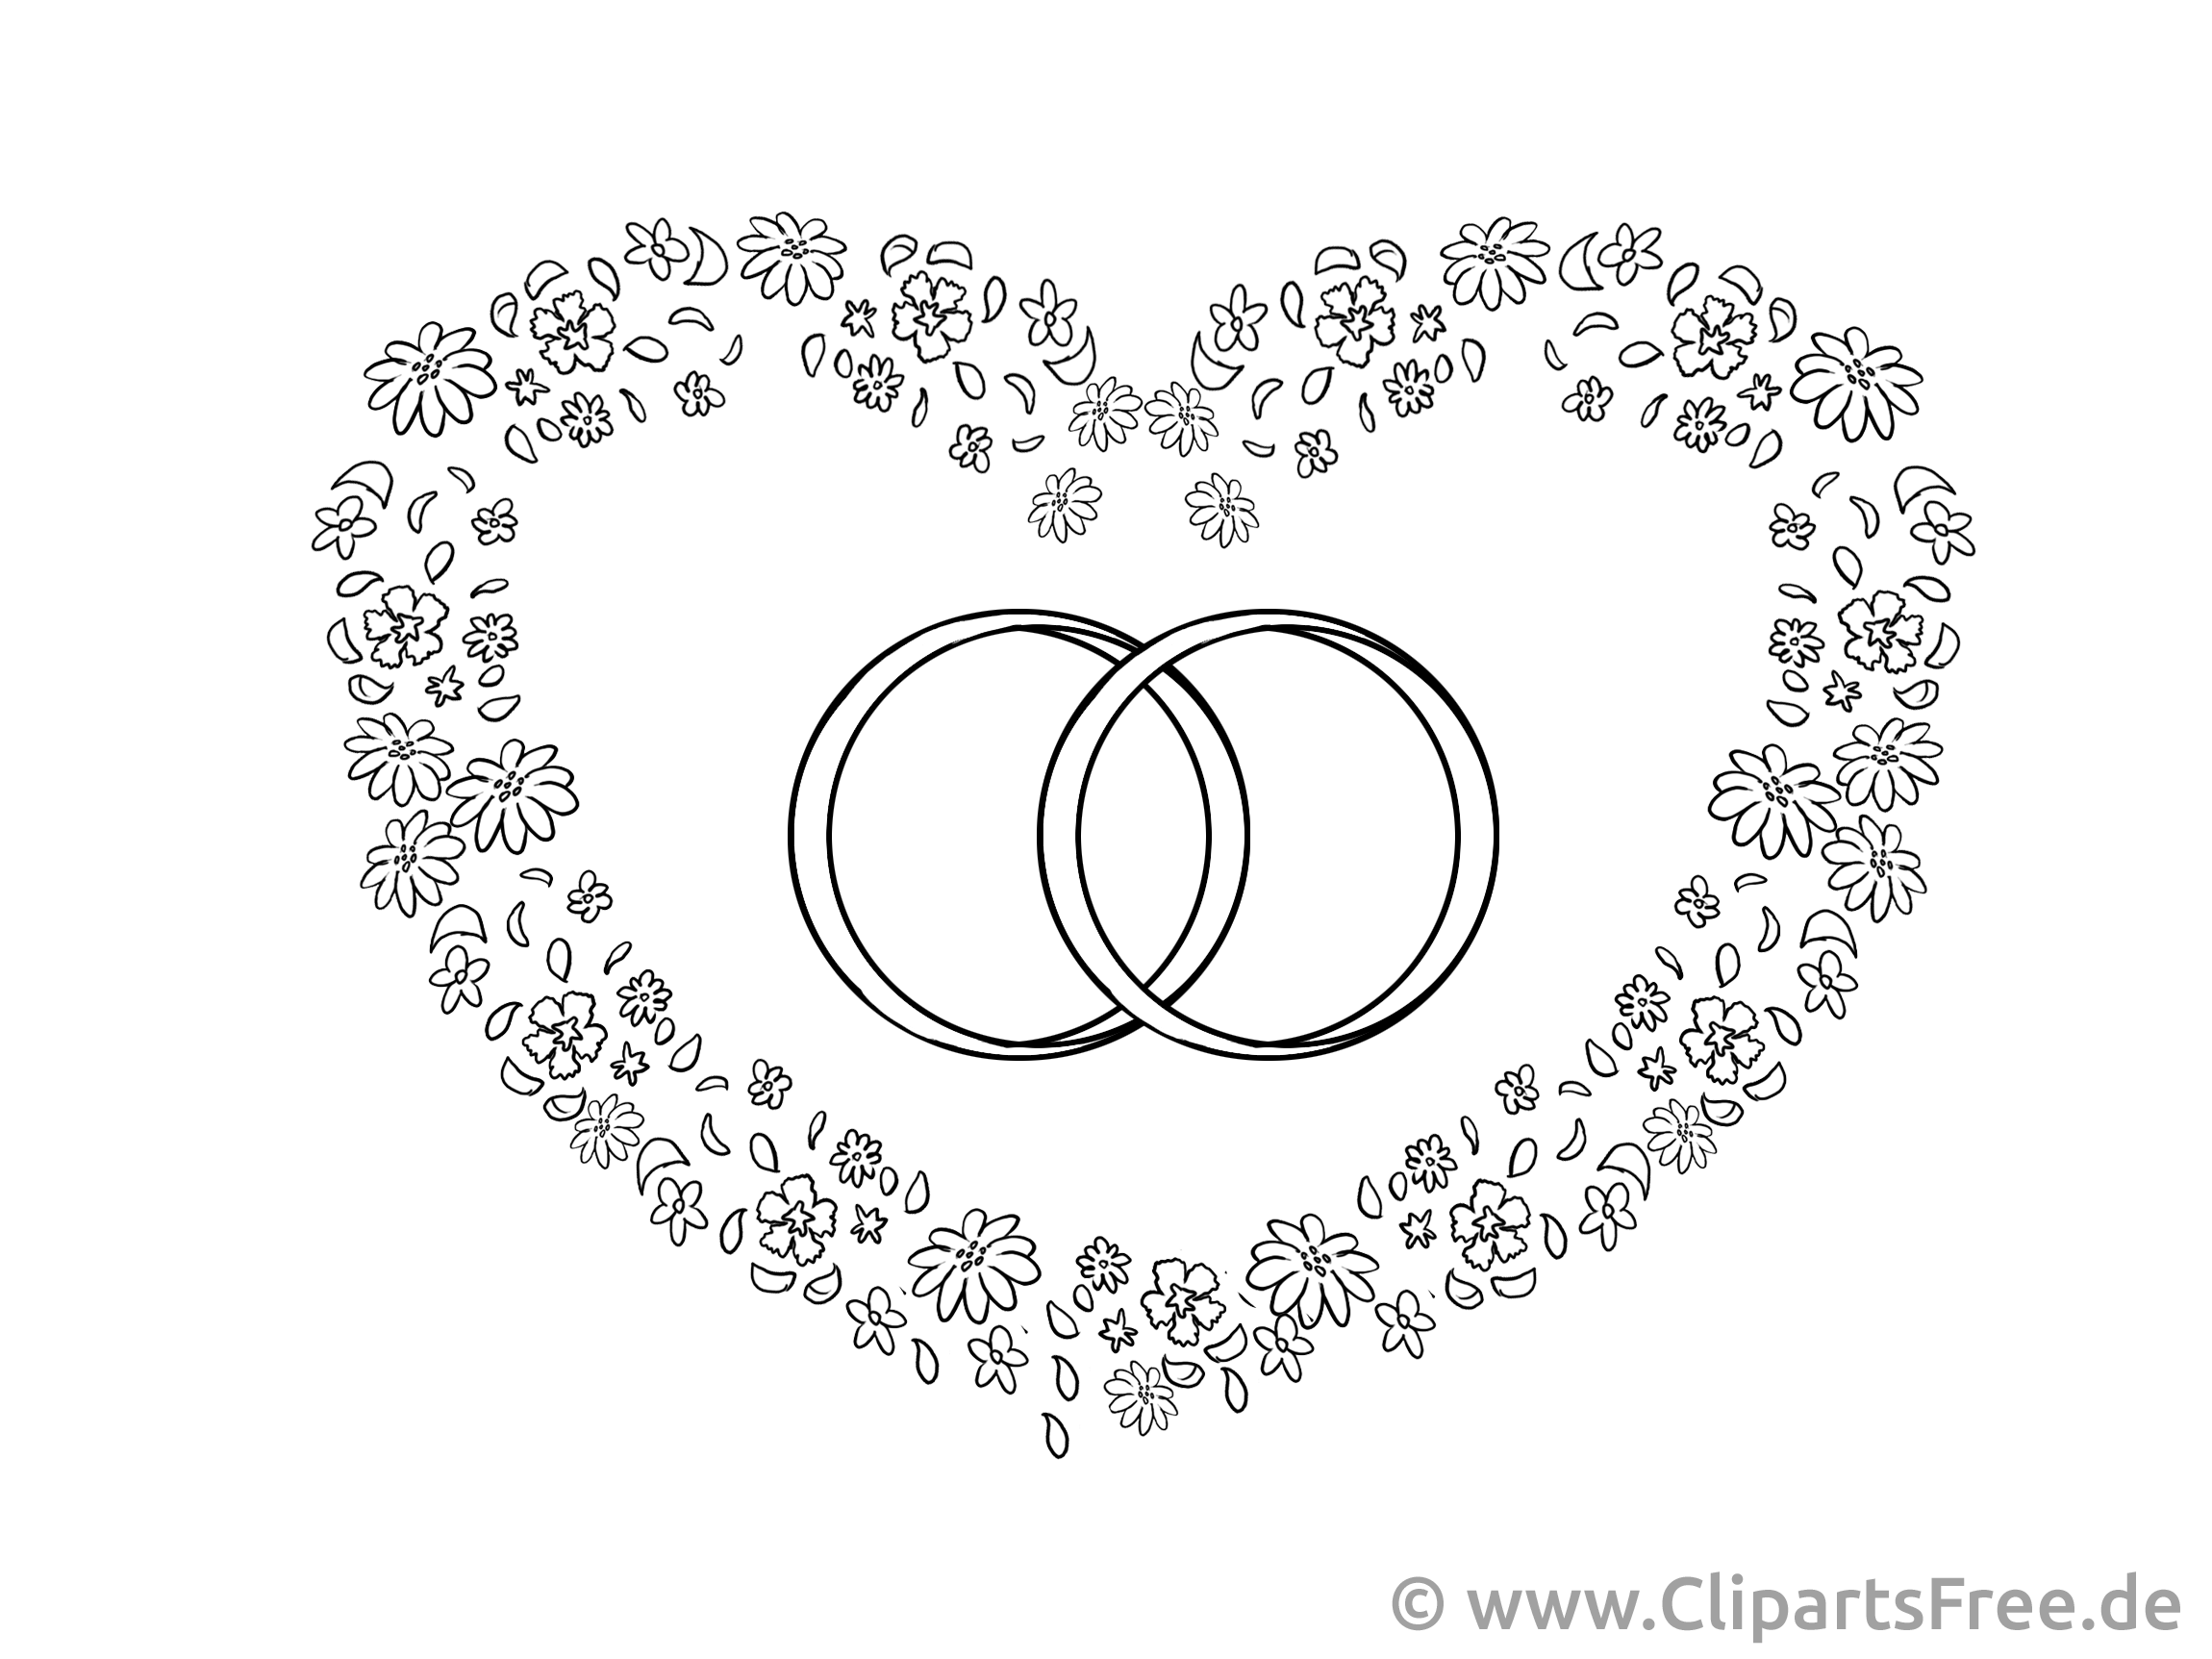 Image à imprimer coeur - Mariage cliparts